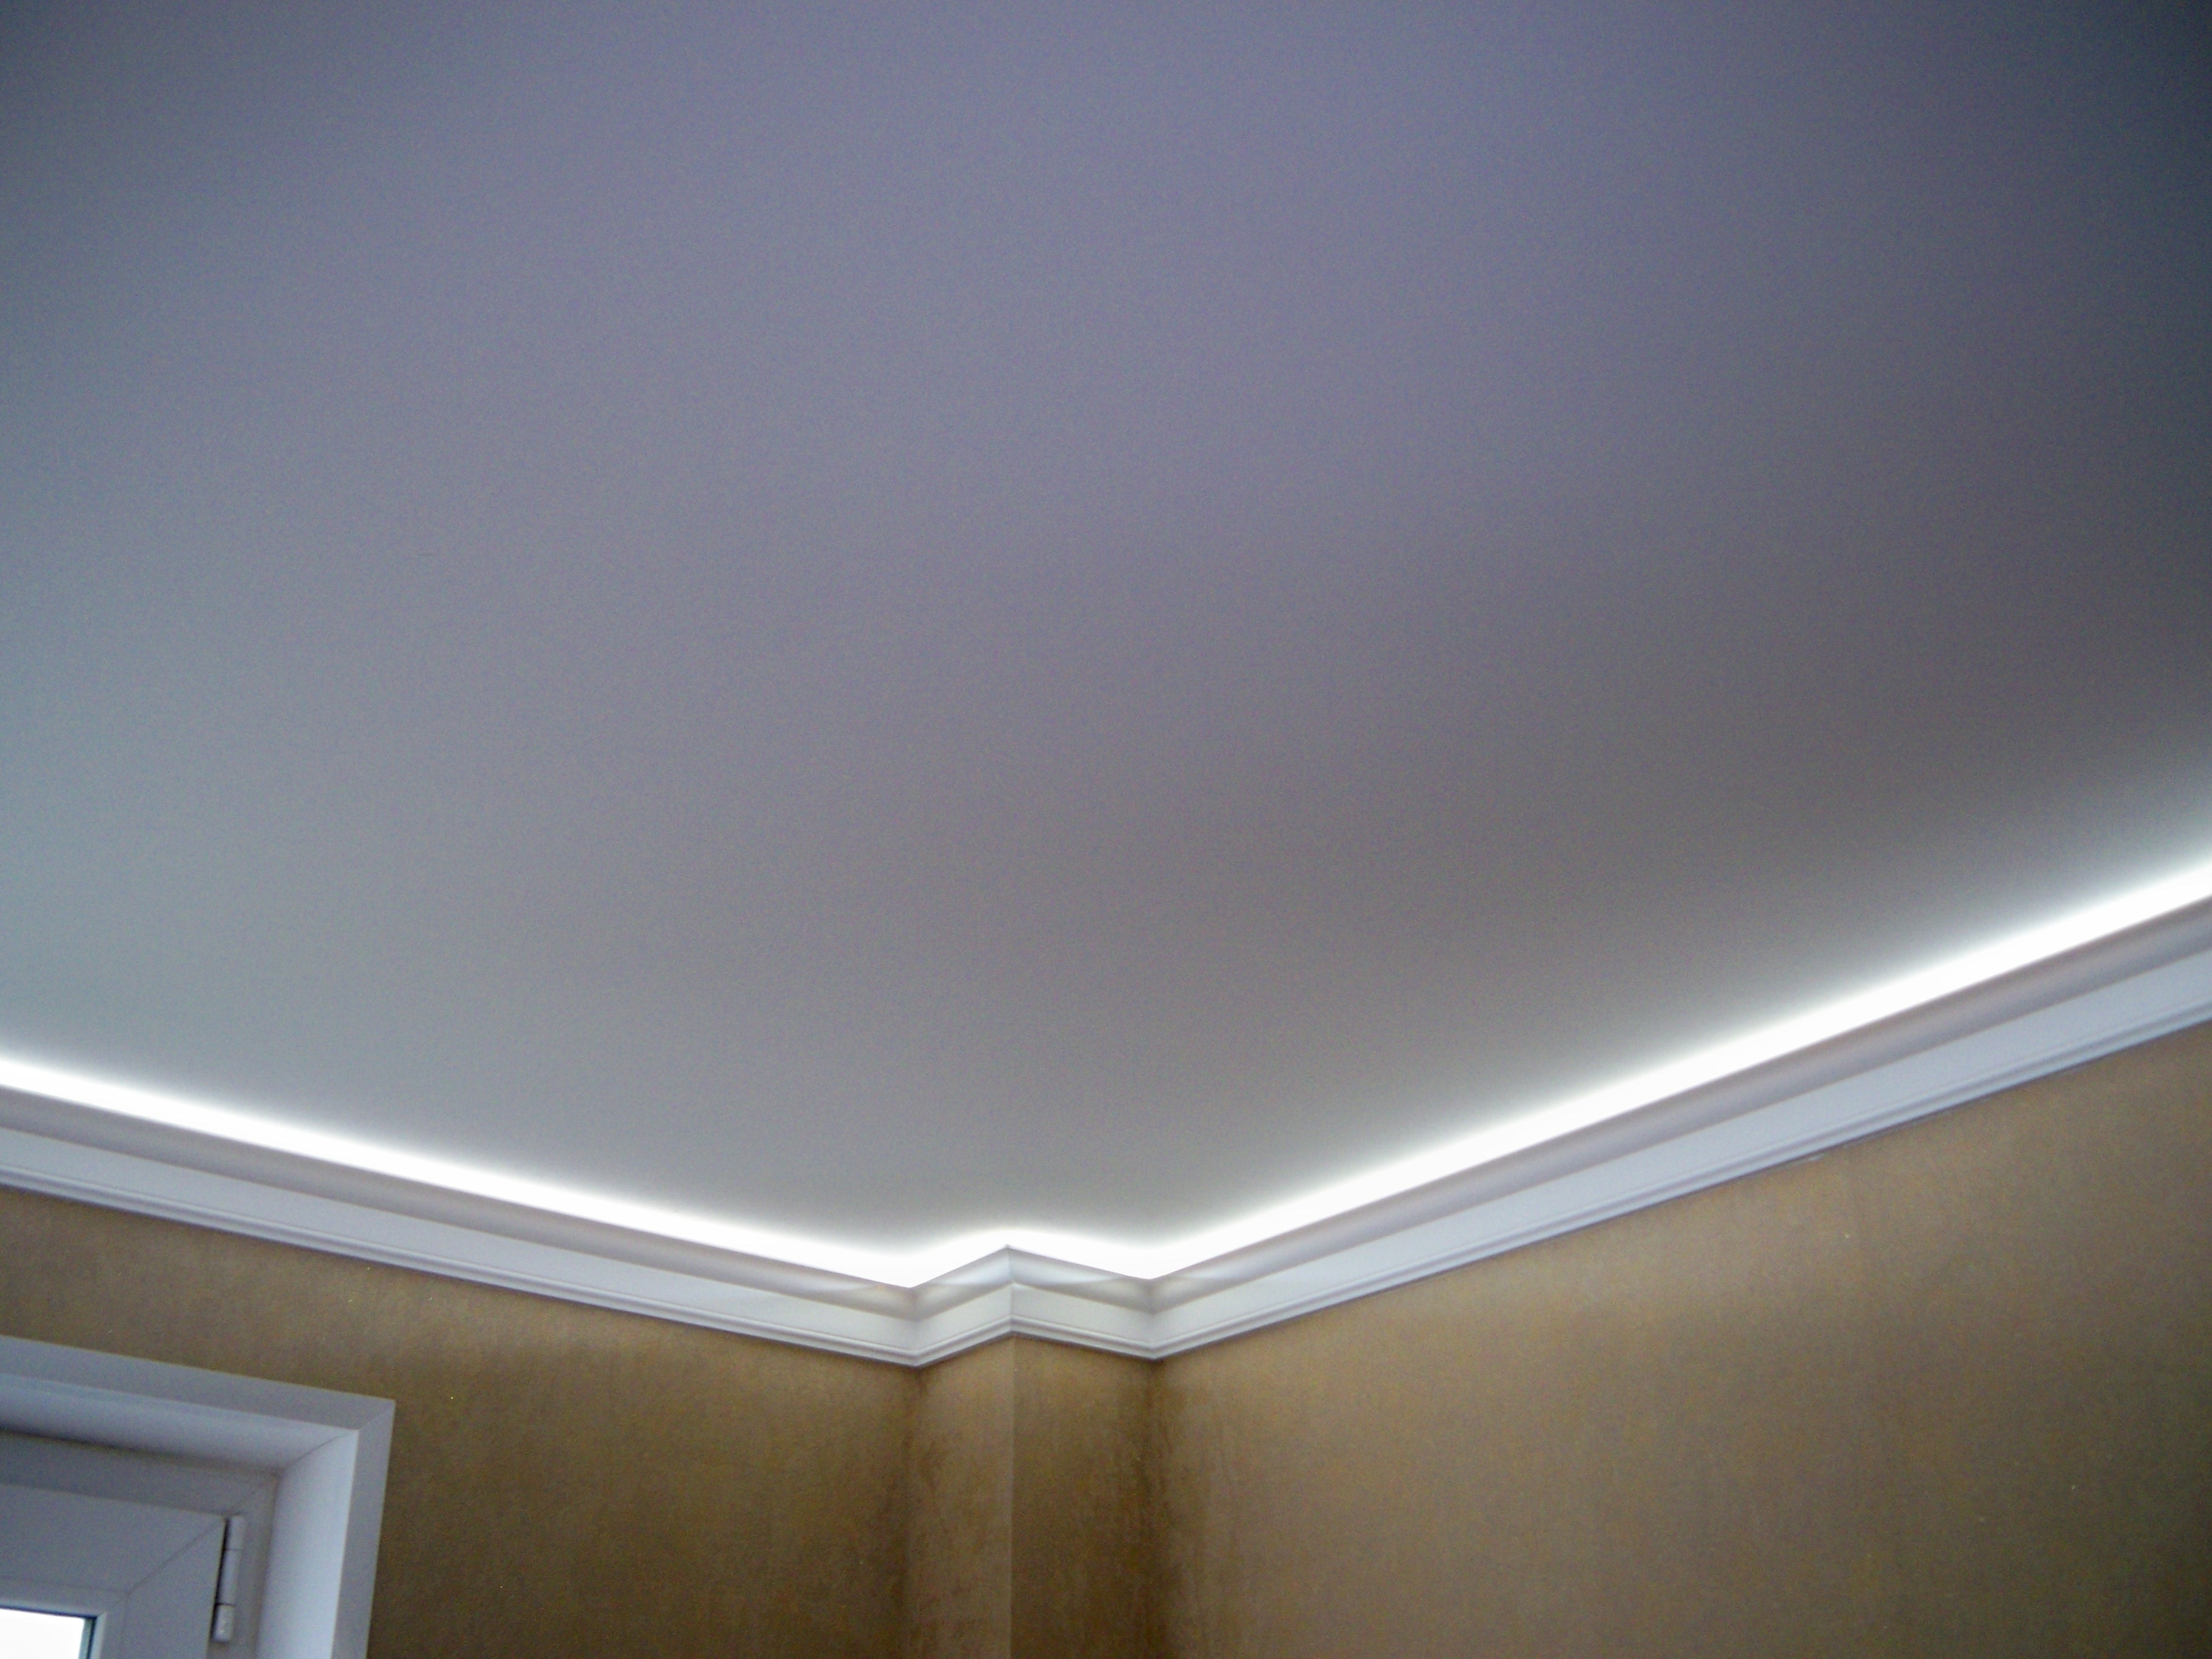 Купить матовые потолки. Потолок с подсветкой. Подвесной потолок с подсветкой. Матовый потолок с подсветкой. Матовый натяжной потолок с подсветкой.